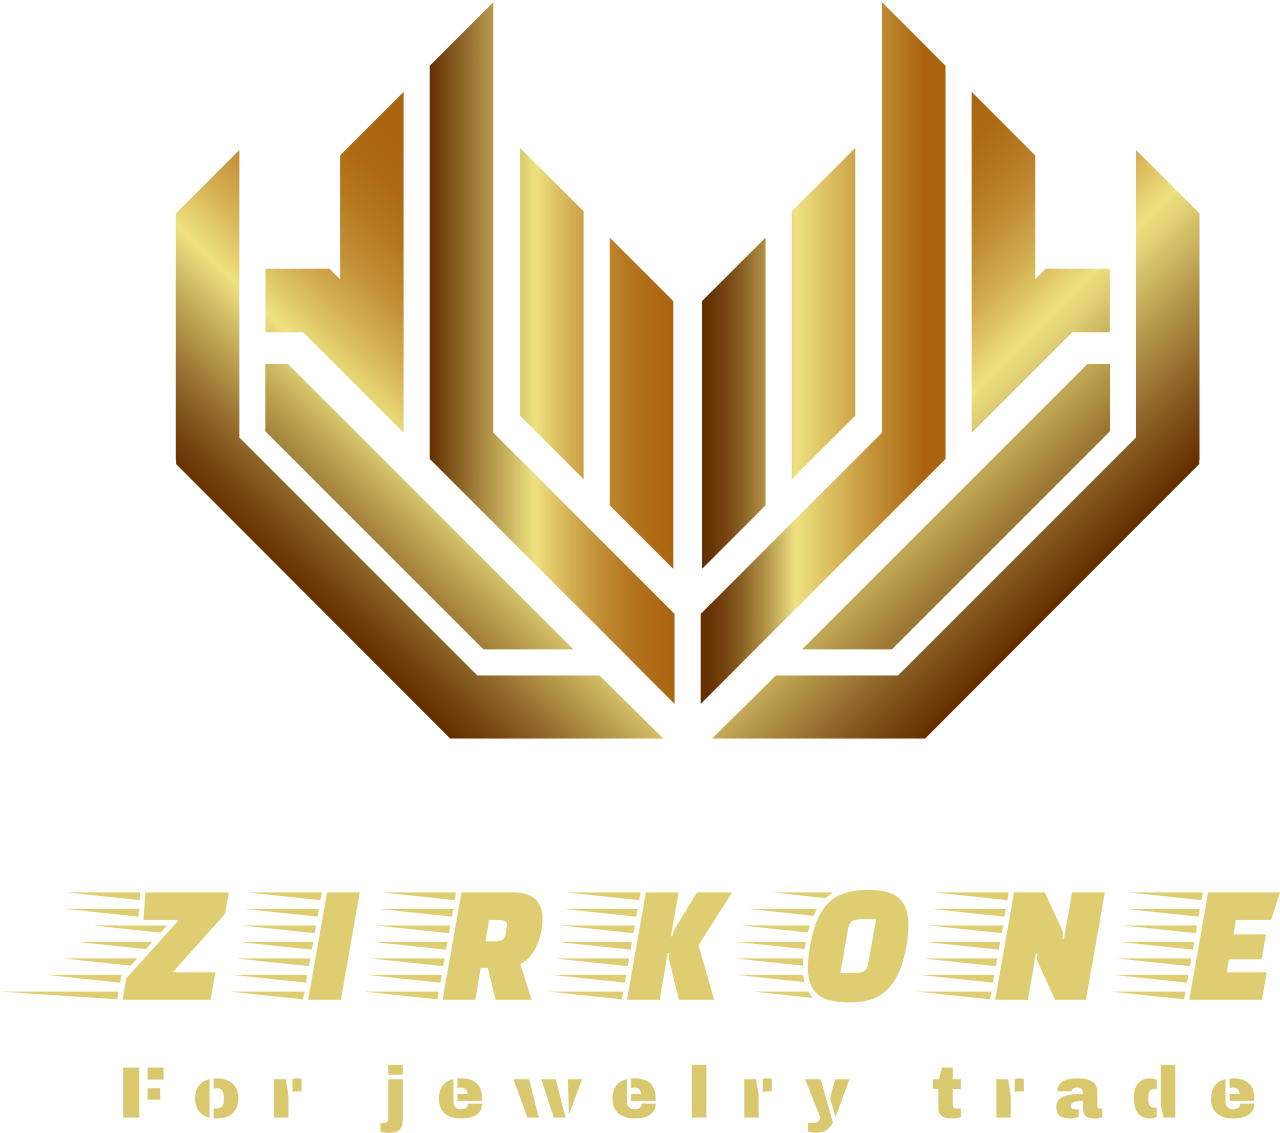 ZIRKONE's web page